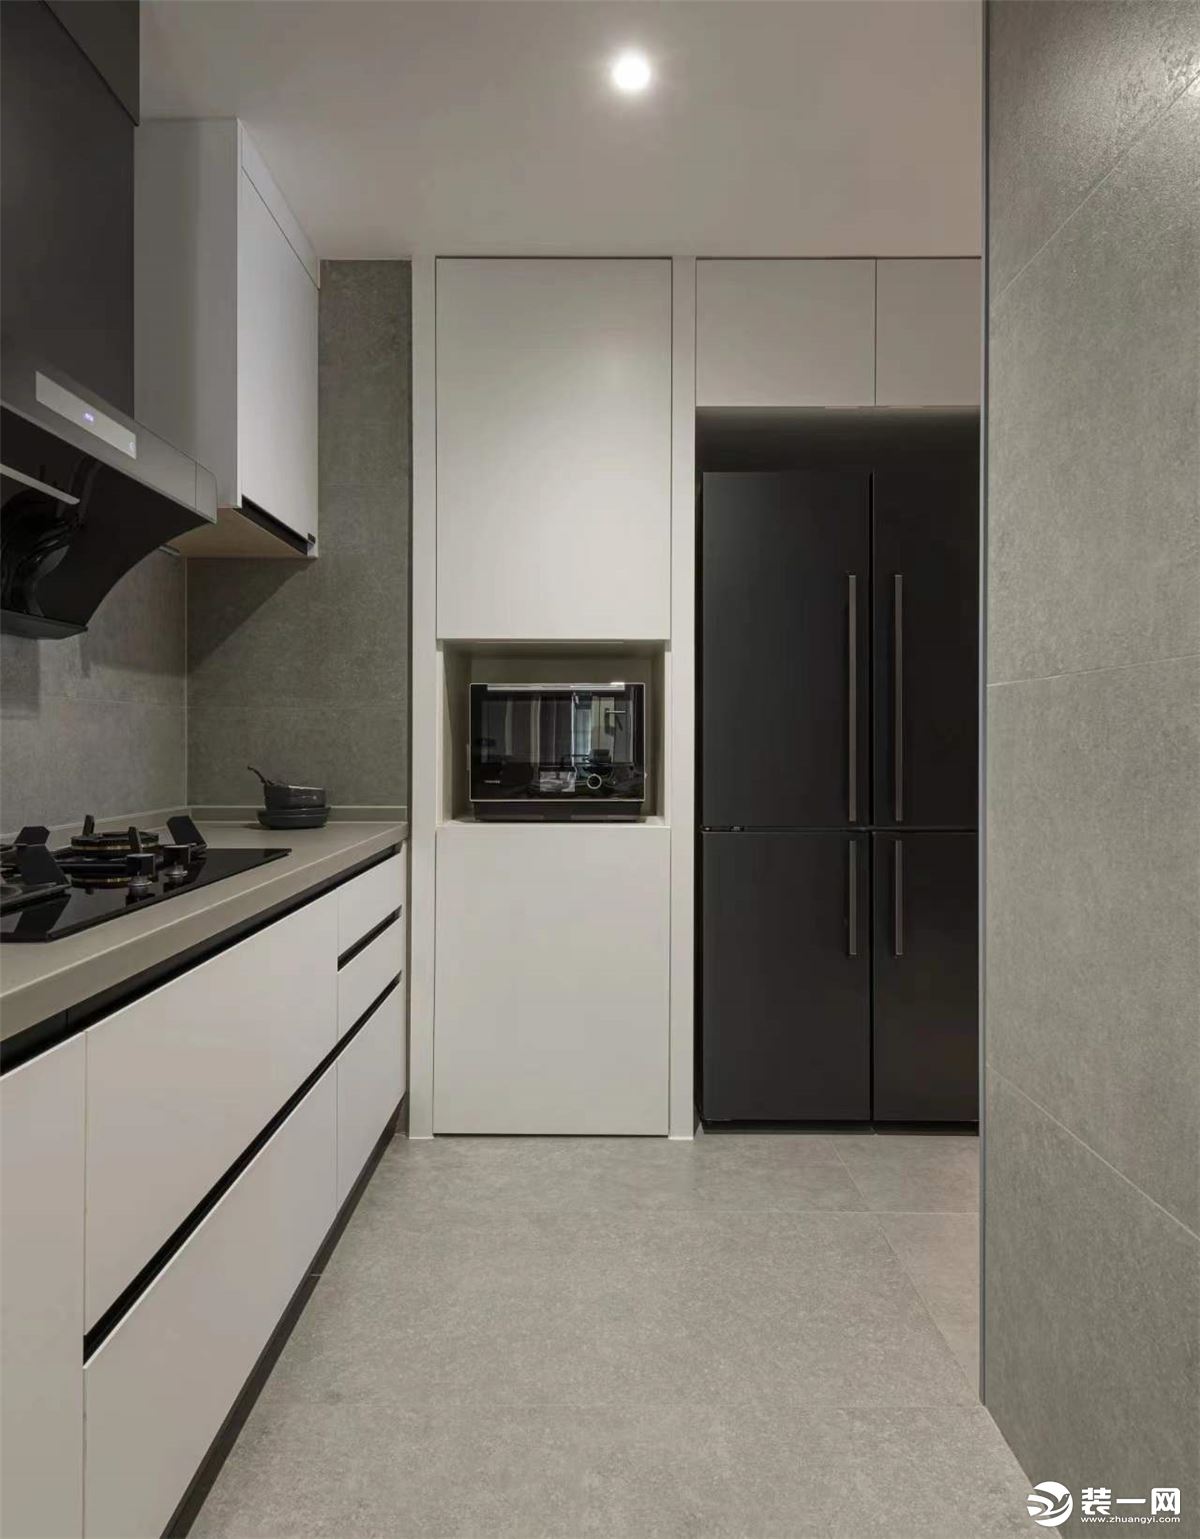 这是厨房的照片，拆除厨房和仓储间的墙体，设计“L”型厨房，利用嵌入式厨电，获得更多的料理空间。